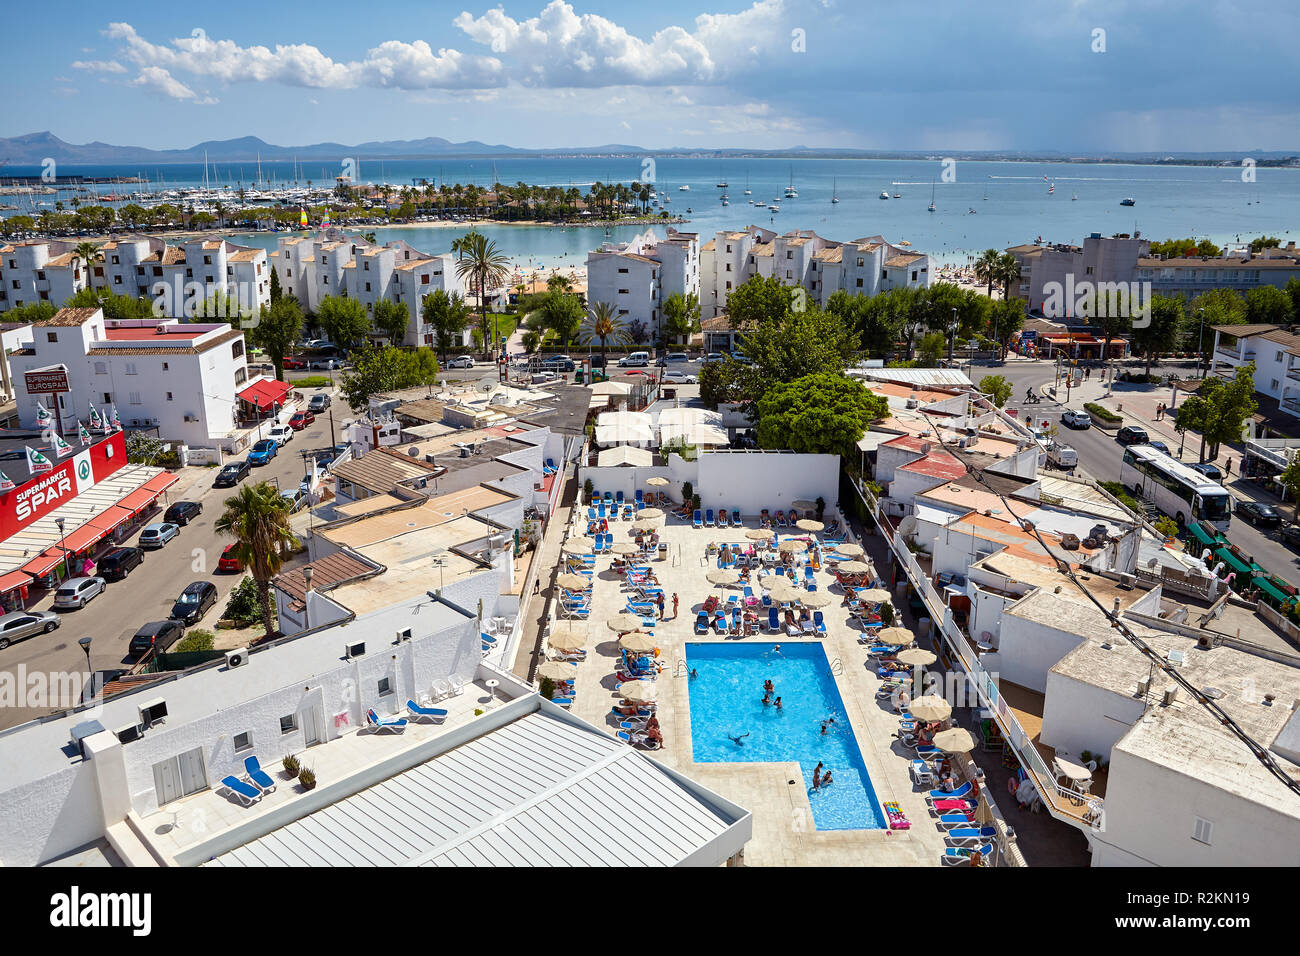 Port d'Alcudia, Mallorca, Spanien - August 16, 2018: Blick auf die Stadt, die für ihre ruhigen Ferienanlagen und eine wunderschöne Küste bekannt. Stockfoto